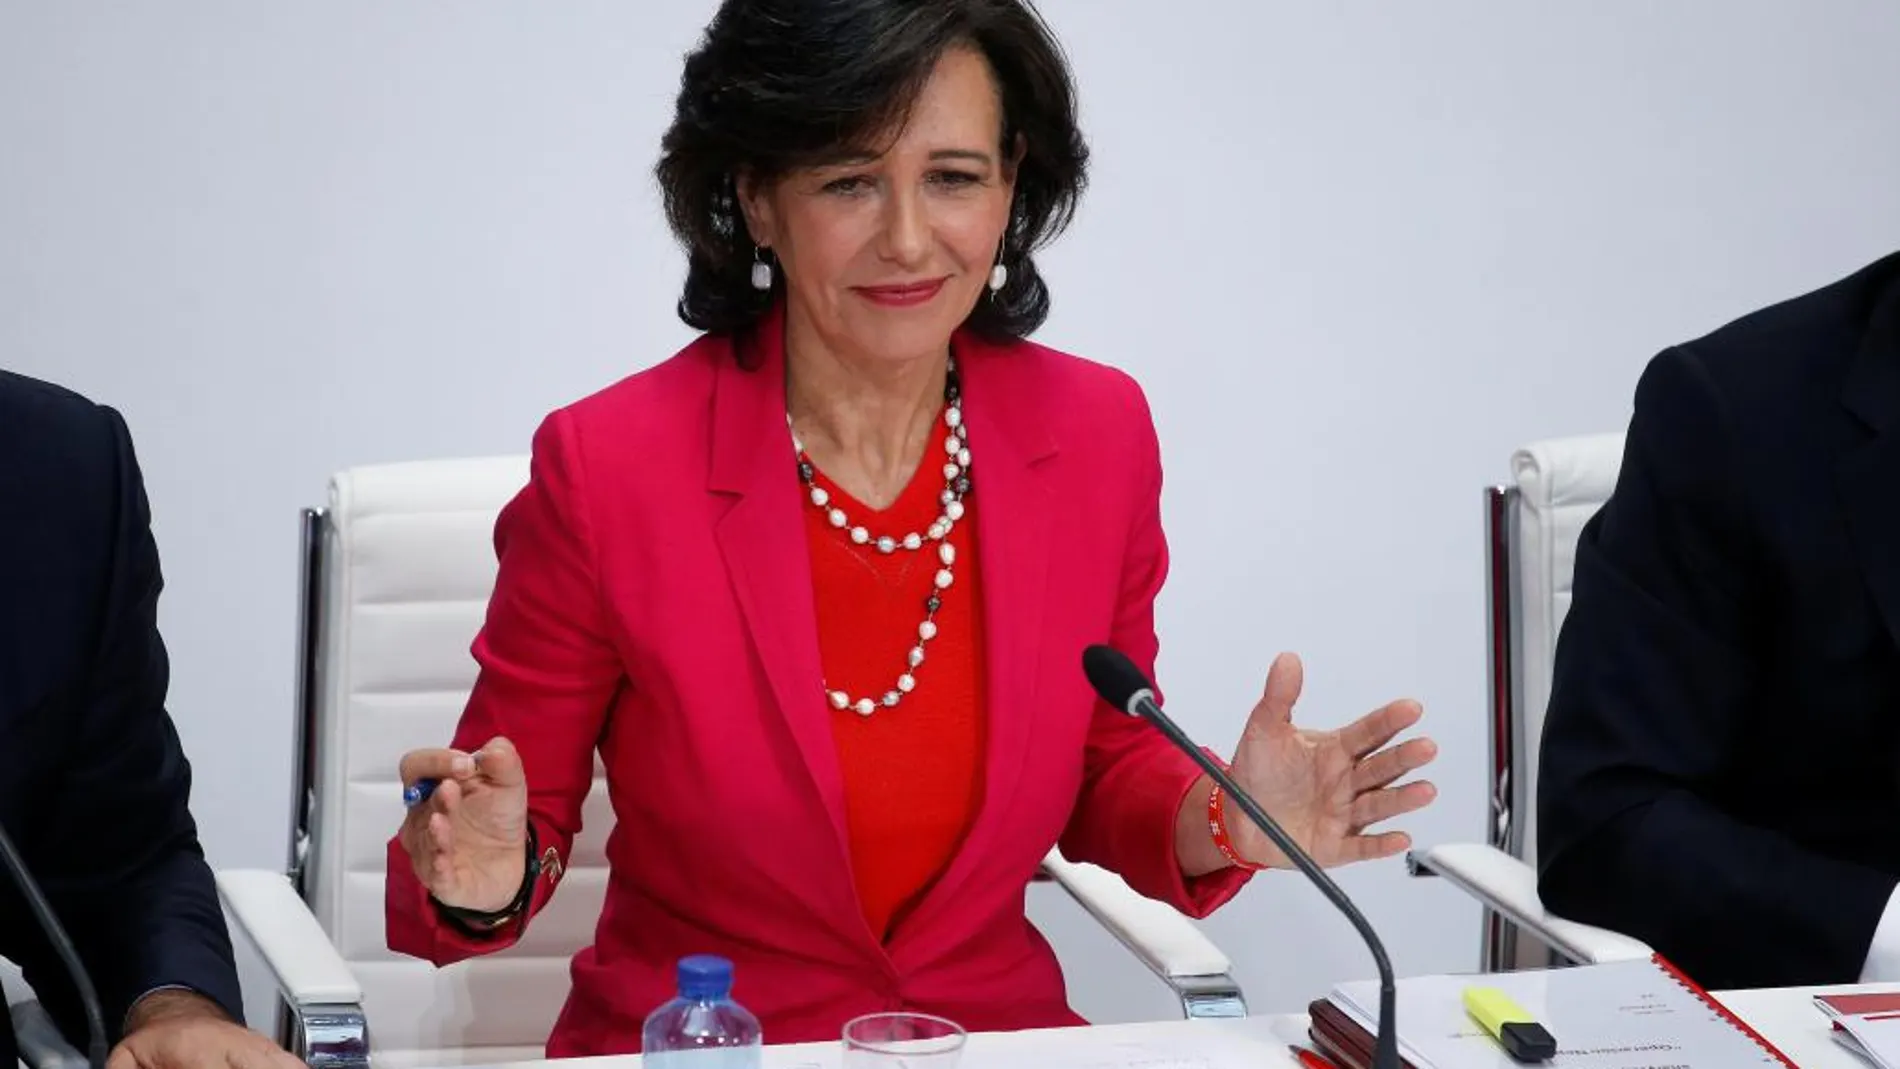 La presidenta del Banco Santander, Ana Patricia Botín, ha comparecido hoy para informar sobre la adquisición del Banco Popular.